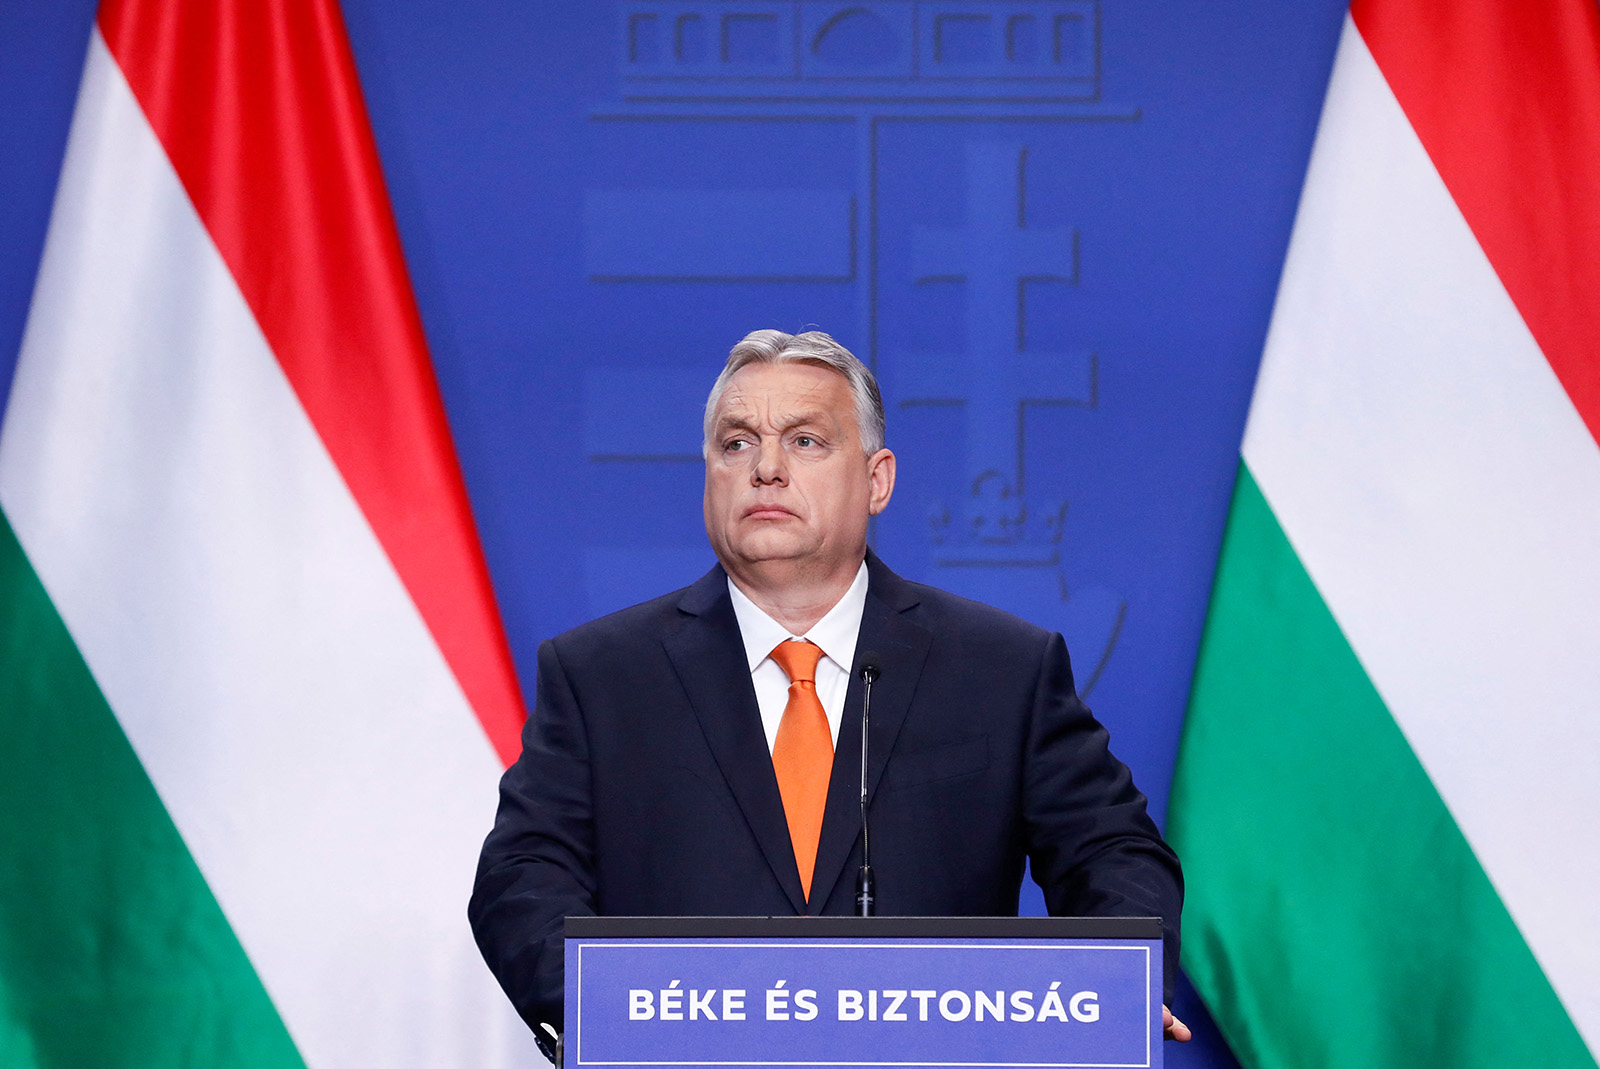 Лідер Угорщини Віктор Орбан вважає Володимира Зеленського своїм супротивником. Фото: REUTERS/Bernadett Szabo